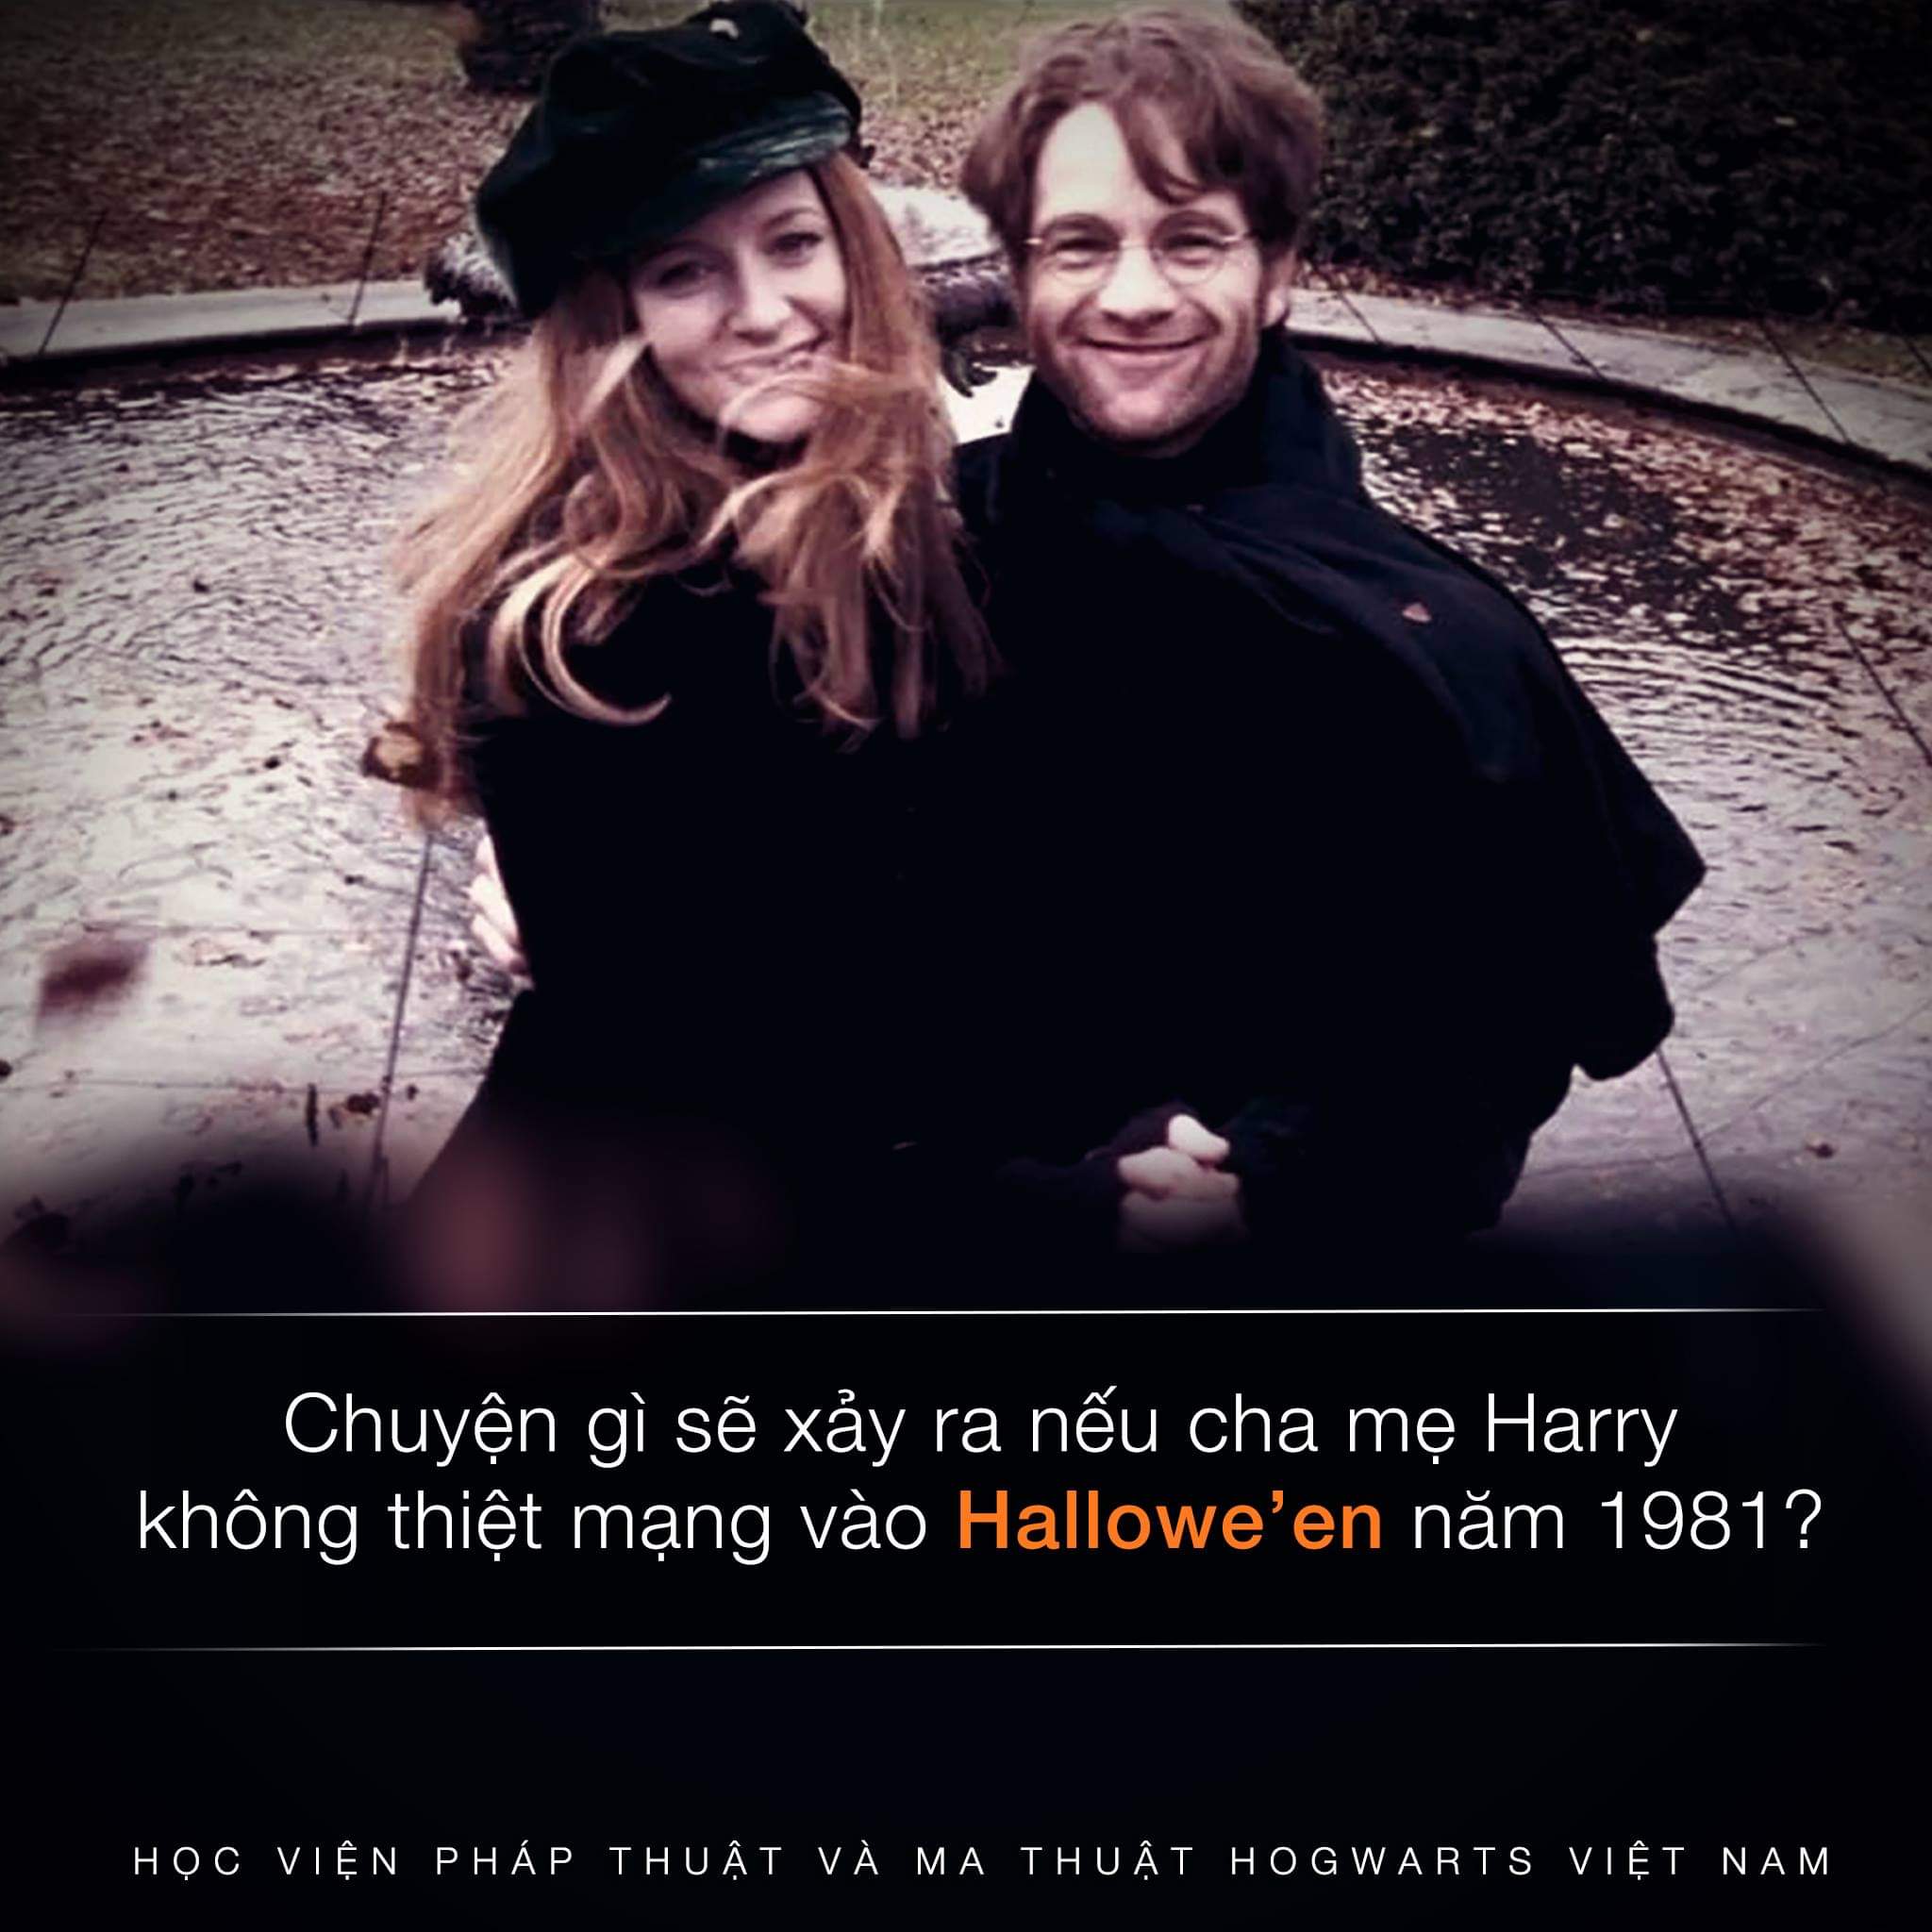 Hallowe'en series: Chuyện gì sẽ xảy ra nếu cha mẹ Harry không thiệt mạng?